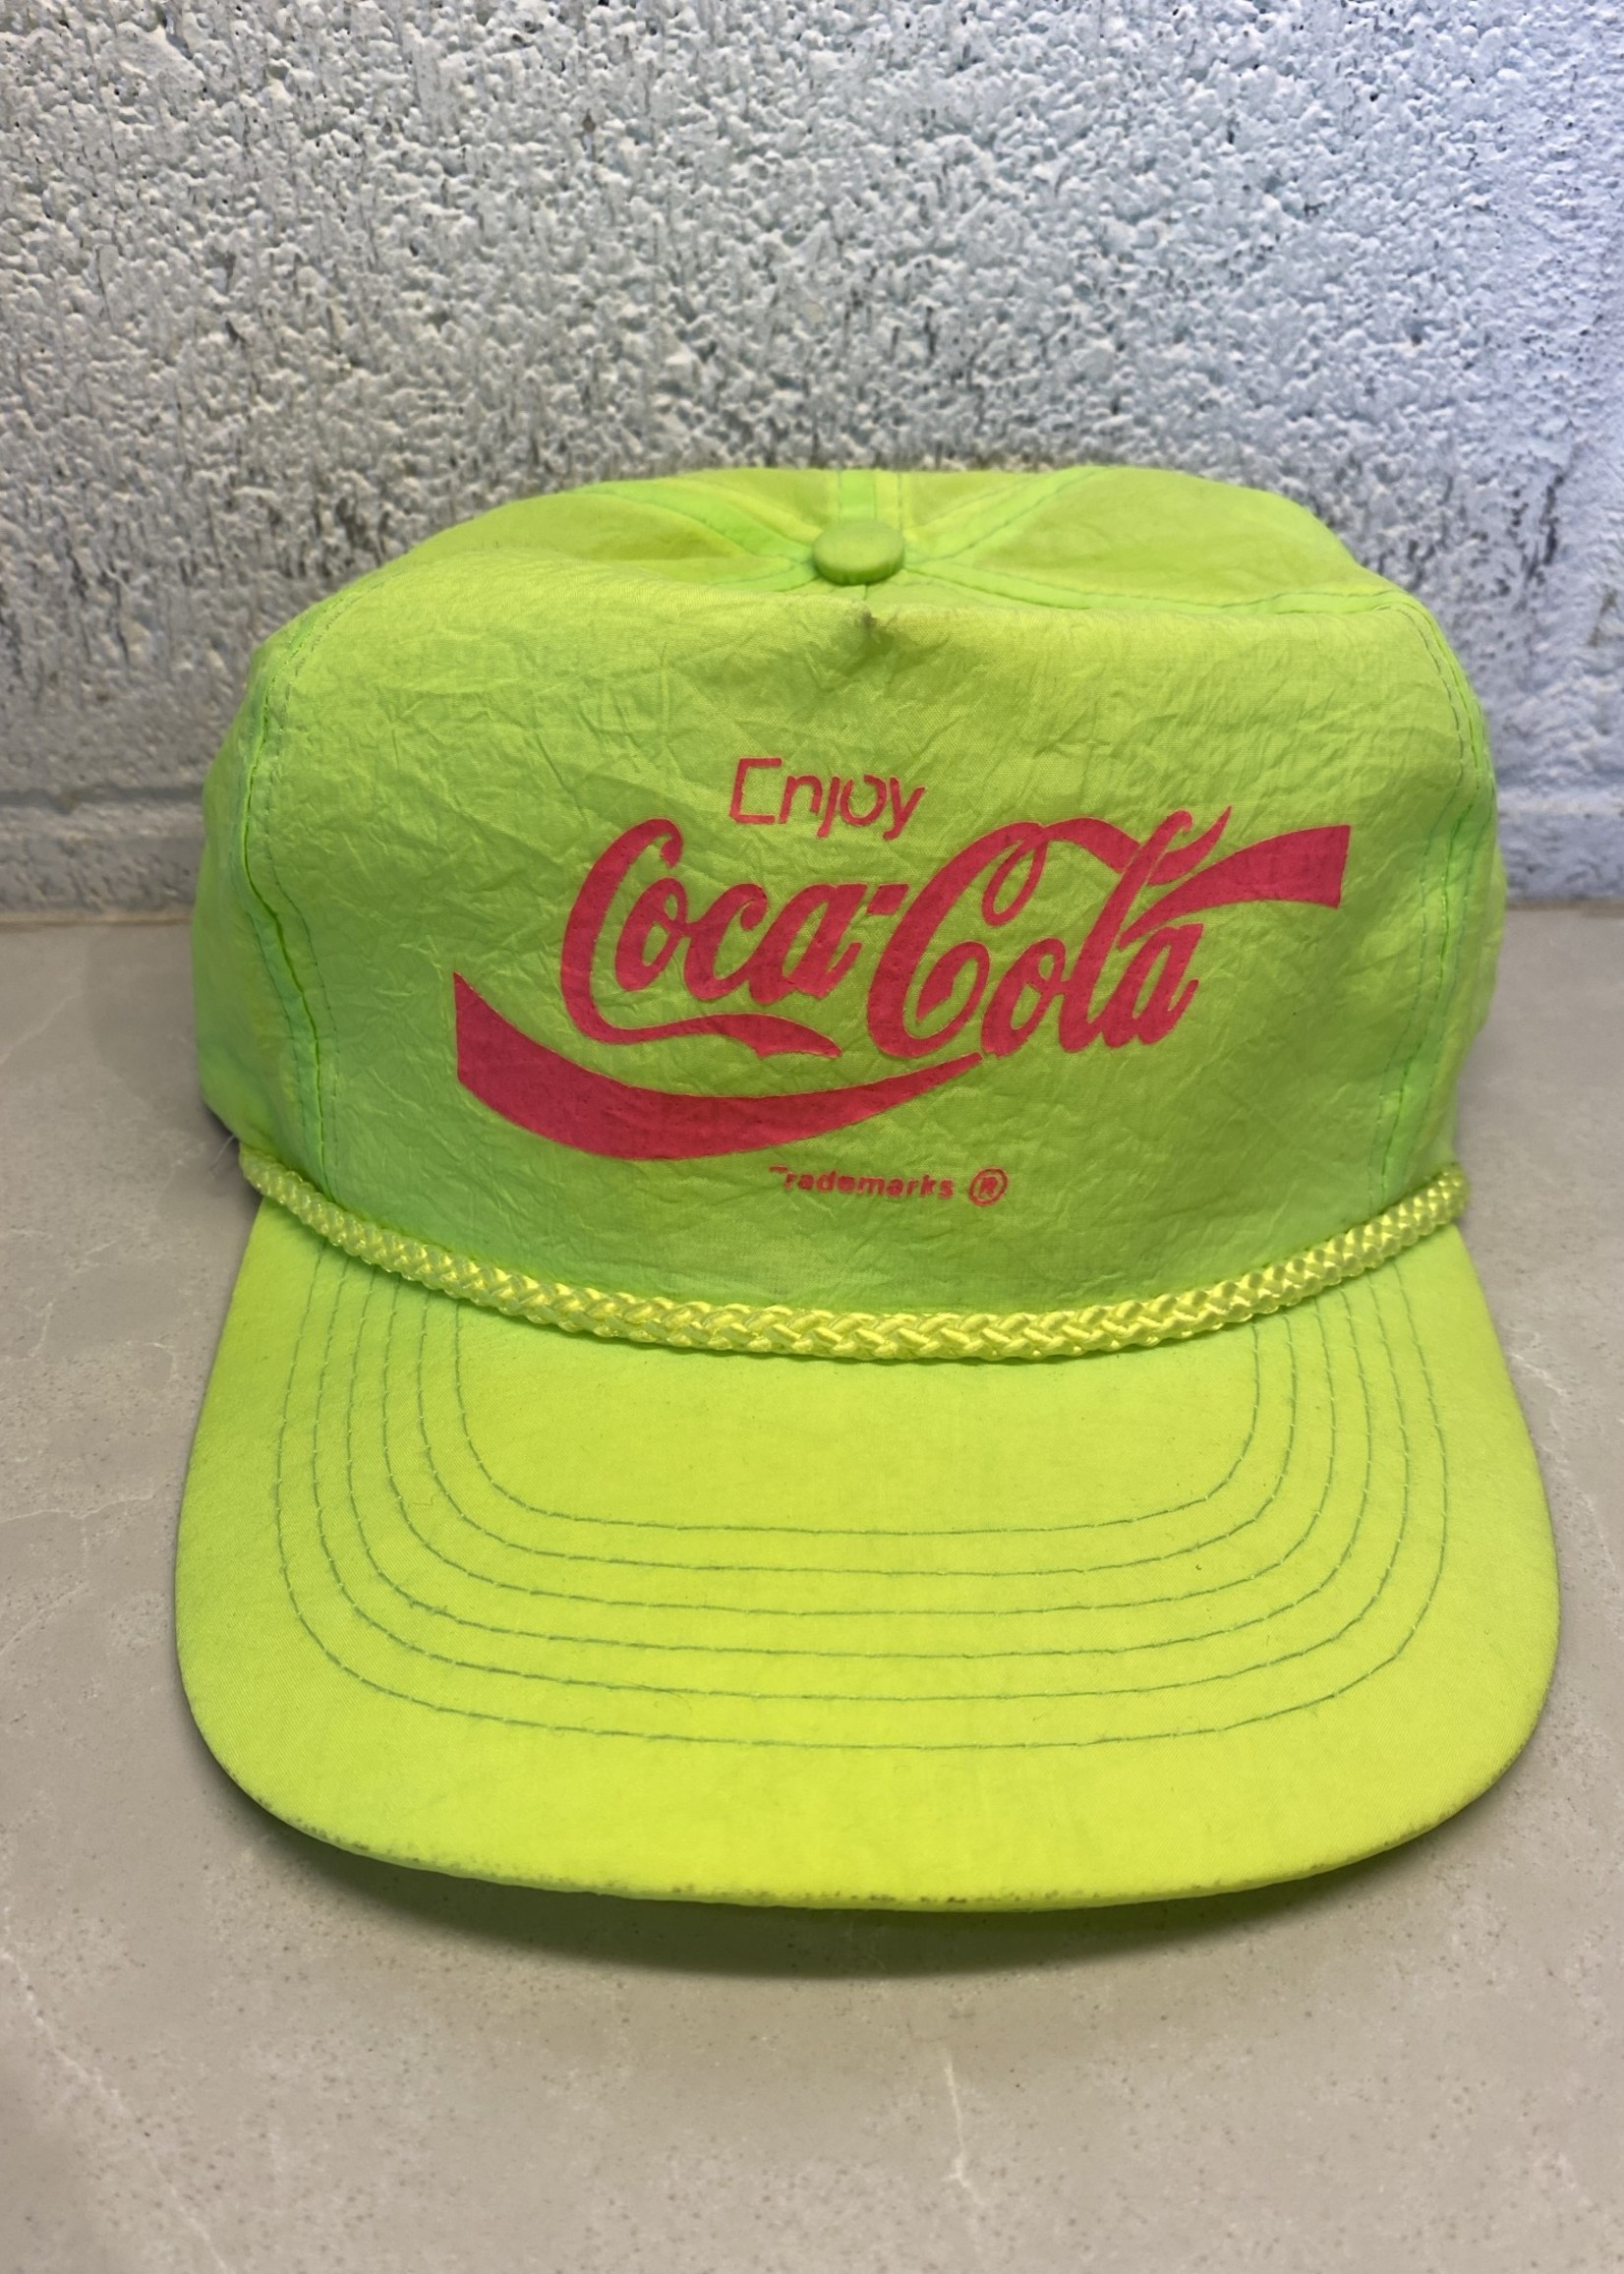 Vintage Coca Cola Neon Hat